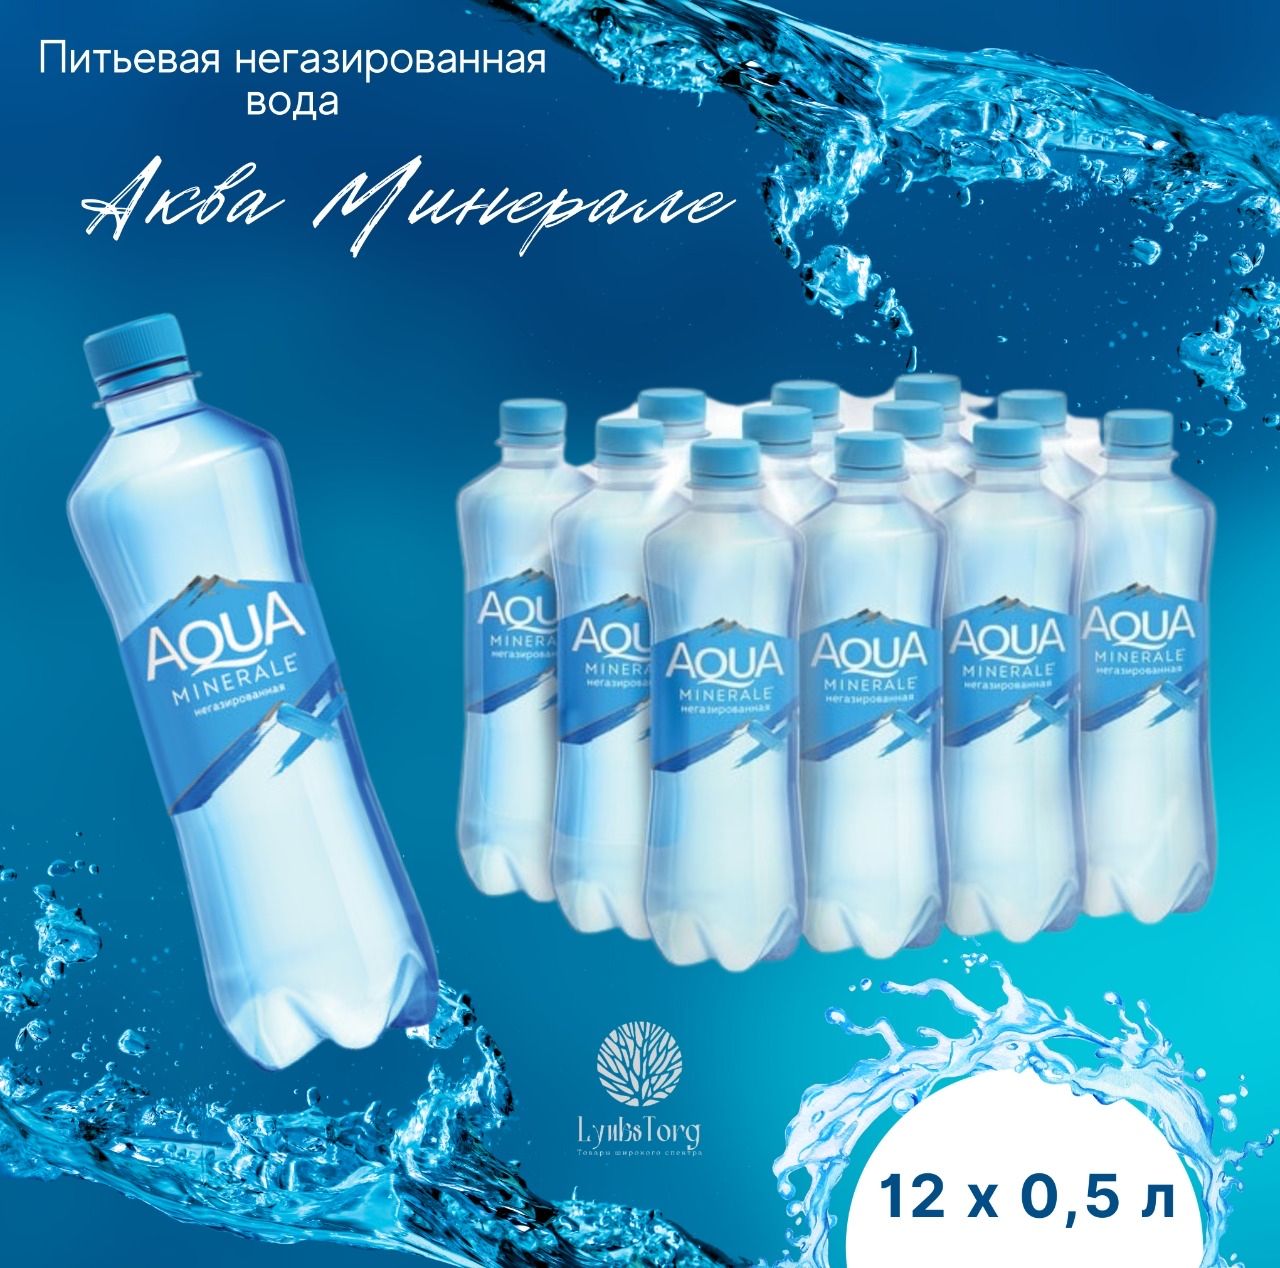 Аква рояле. Питьевая вода "Aqua Royale". Вода детская Aqua. Aqua minerale реклама. Чехия Aqua minerale.